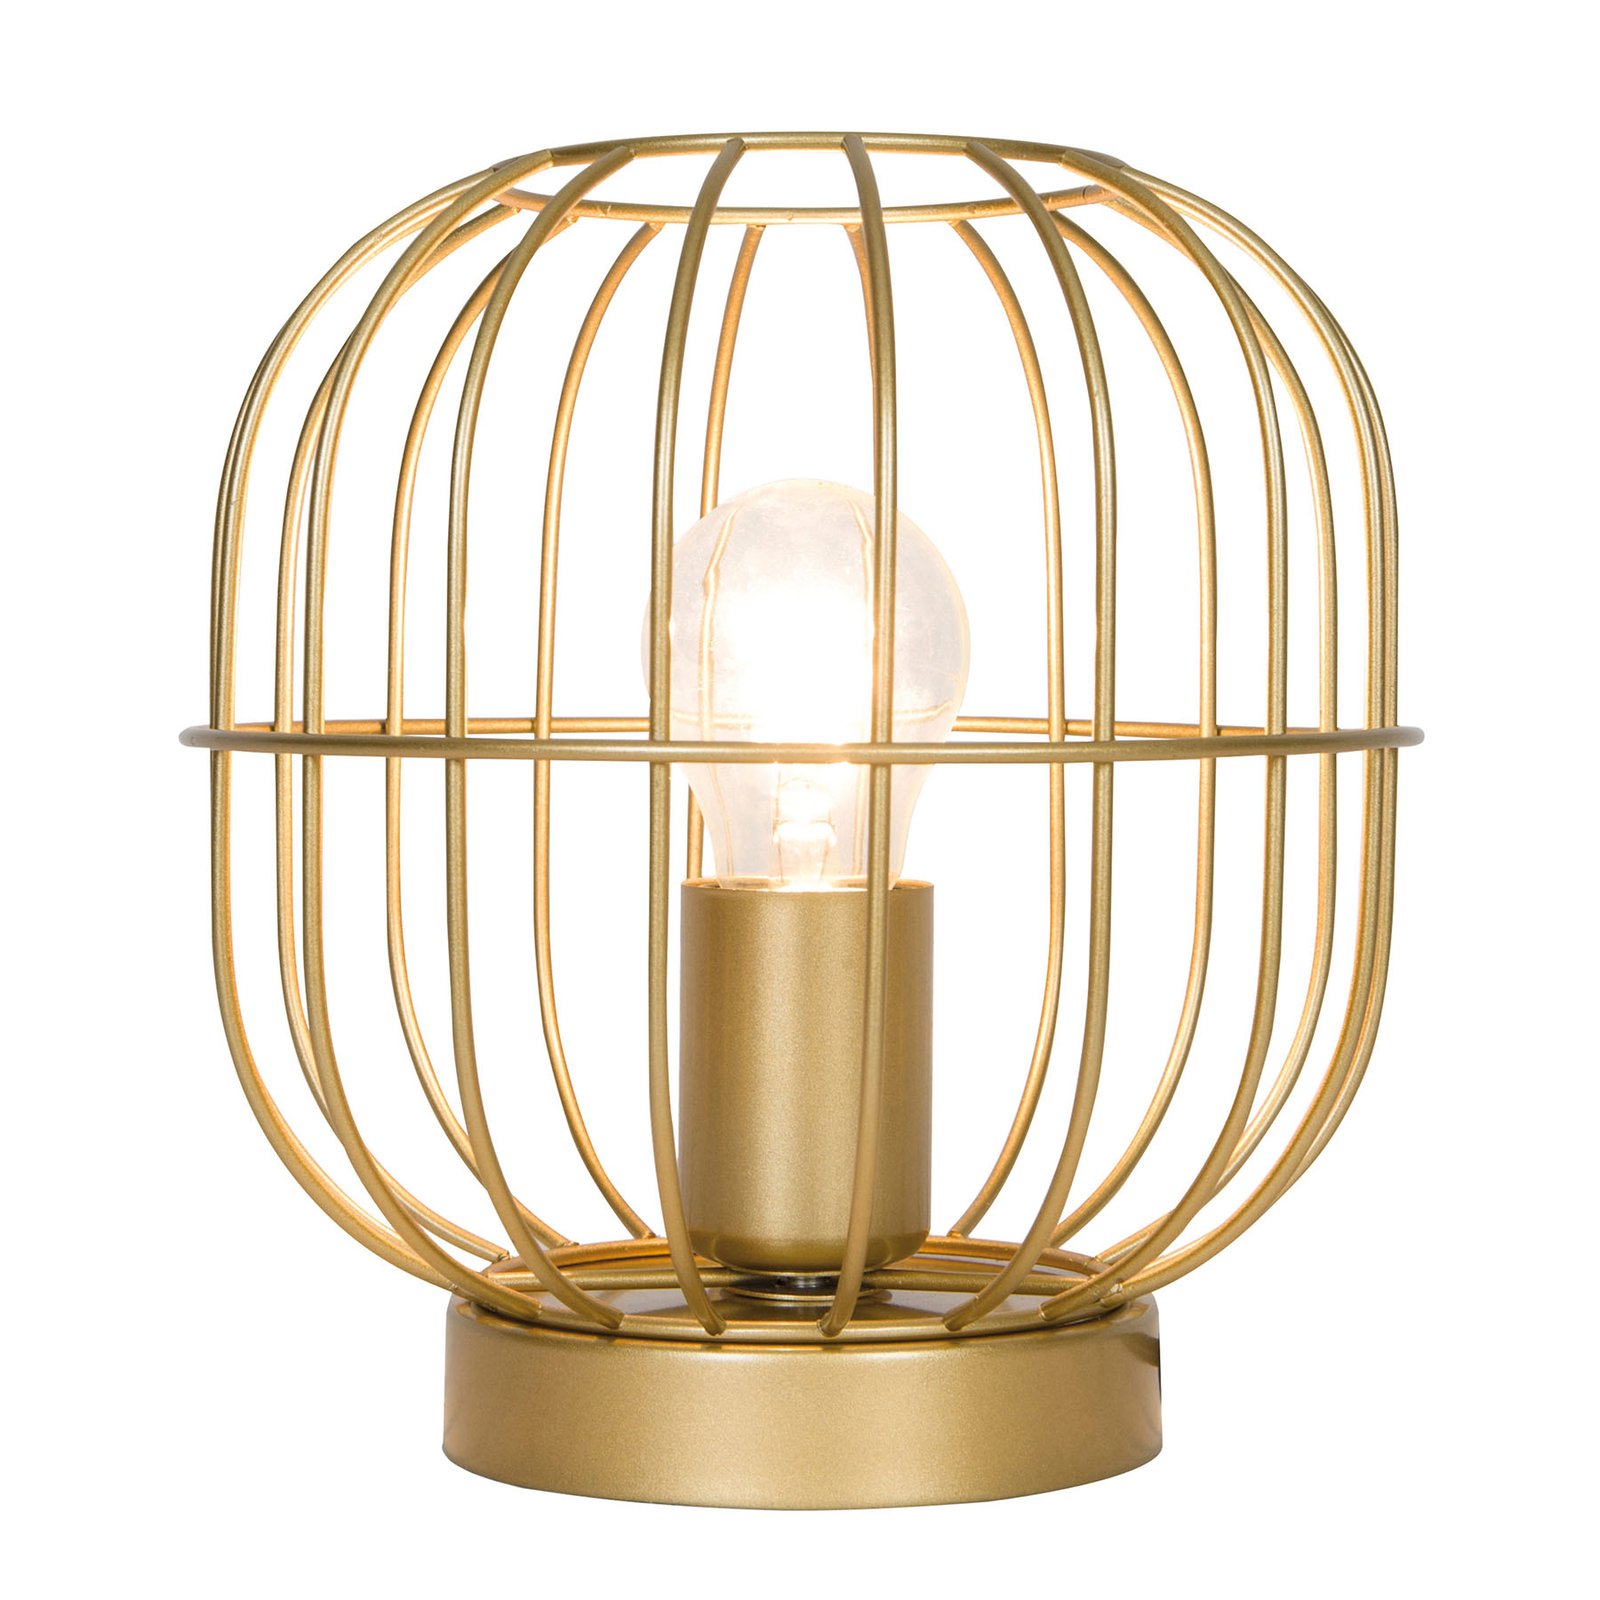 Lampe à poser Zenith en forme de cage, dorée